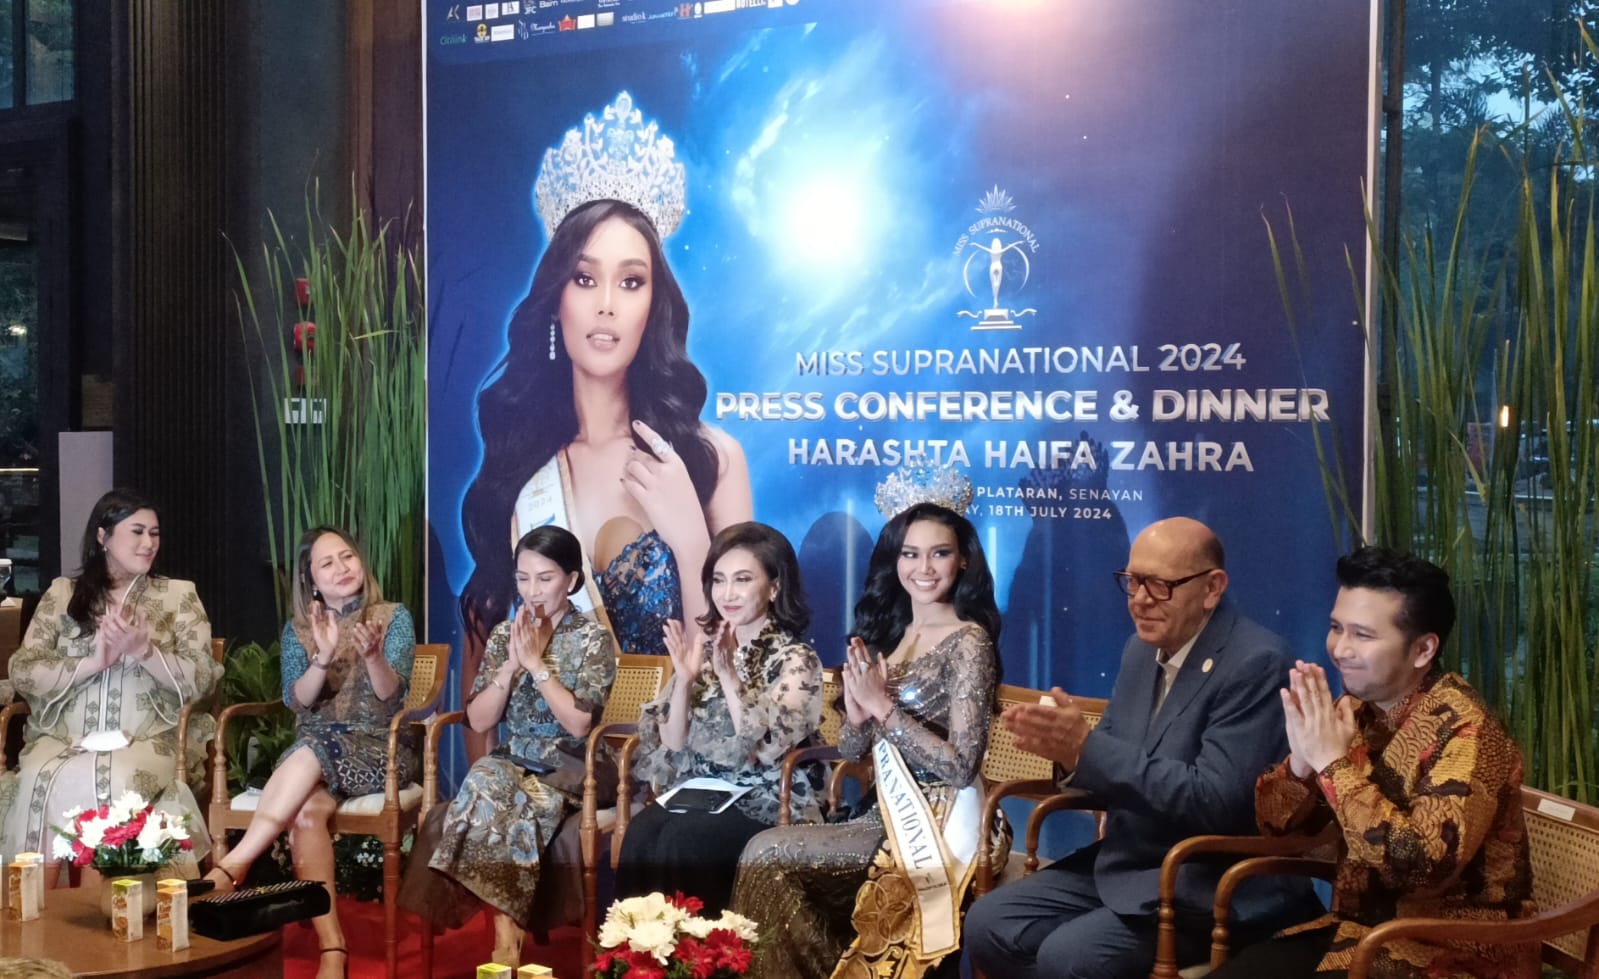 Cetak Sejarah! Harashta Haifa Zahra, Juara Miss Supranational 2024